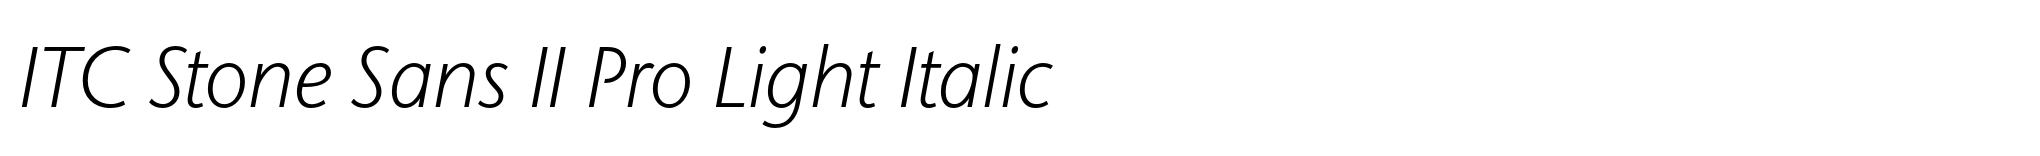 ITC Stone Sans II Pro Light Italic image